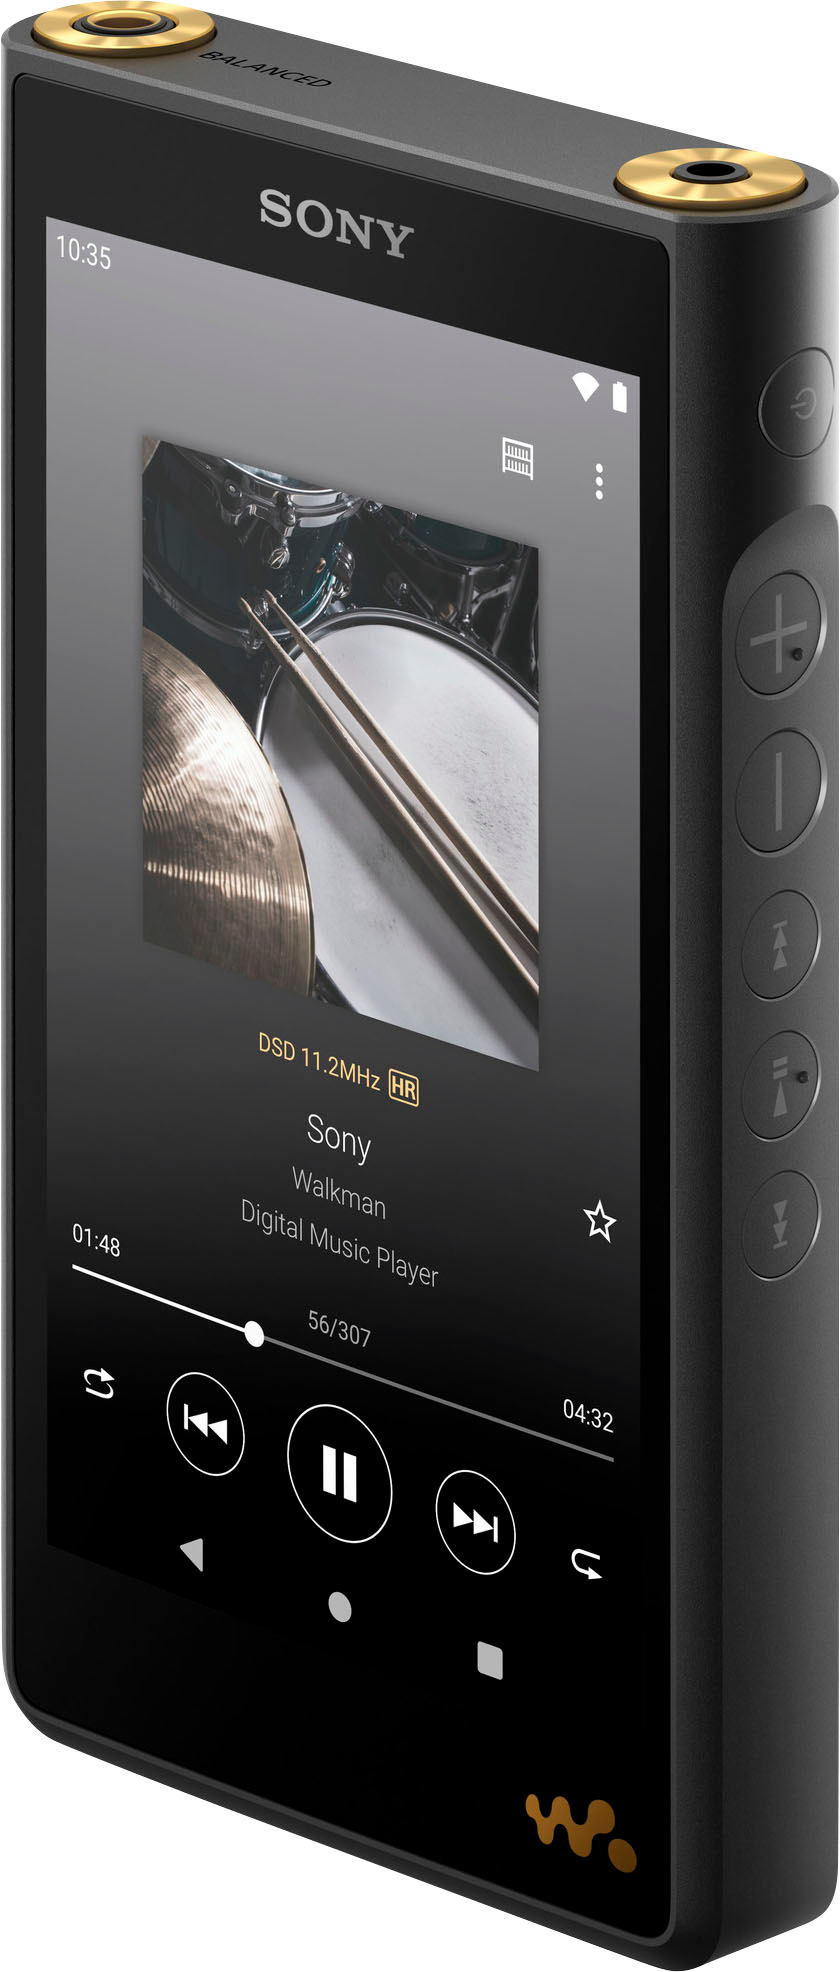 Sony NWWM1AM2 Walkman High Resolution Digital Music Player Black NWWM1AM2  Best Buy